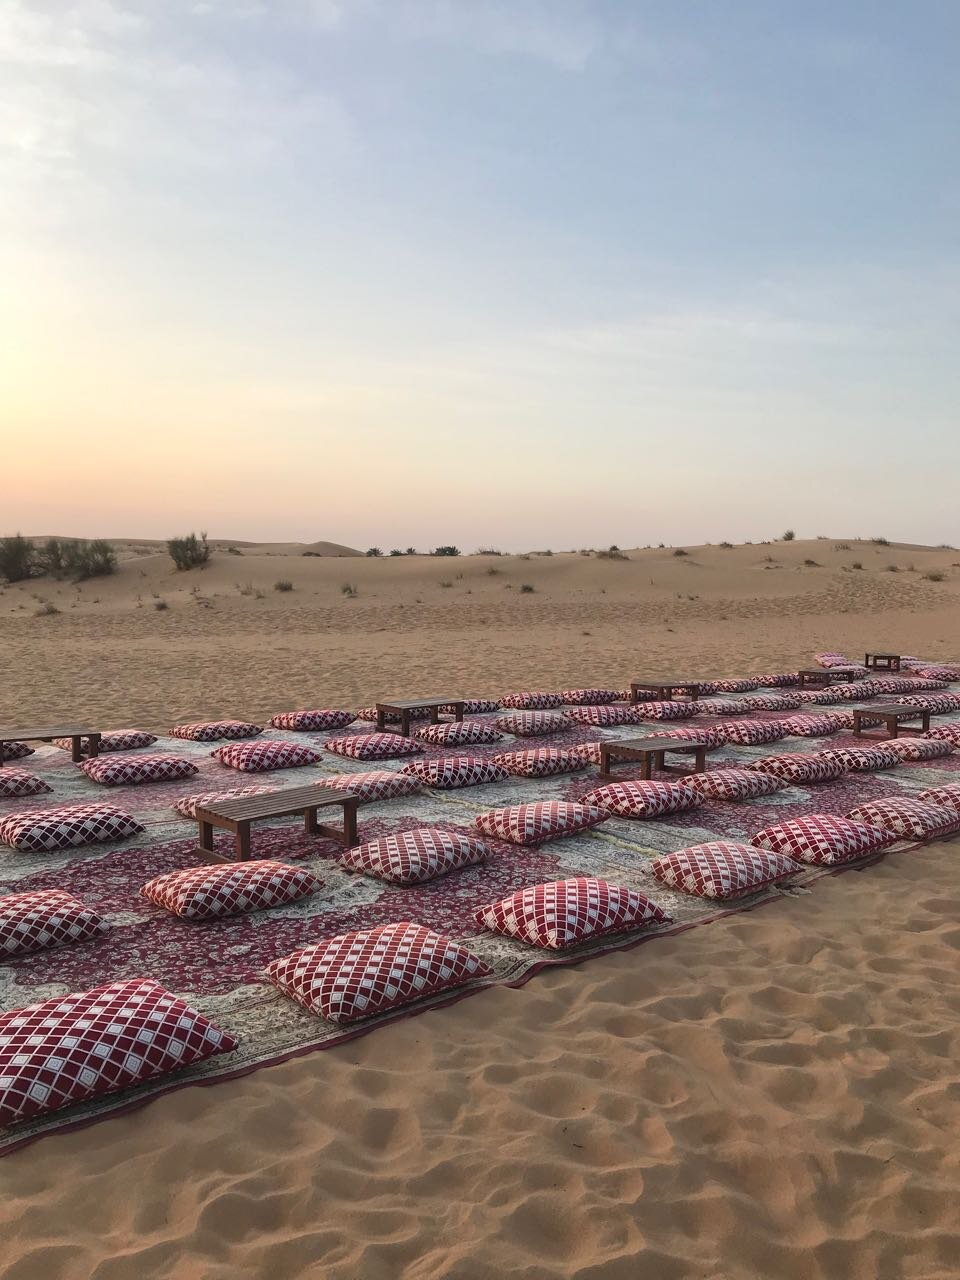 cushions in the desert.jpg